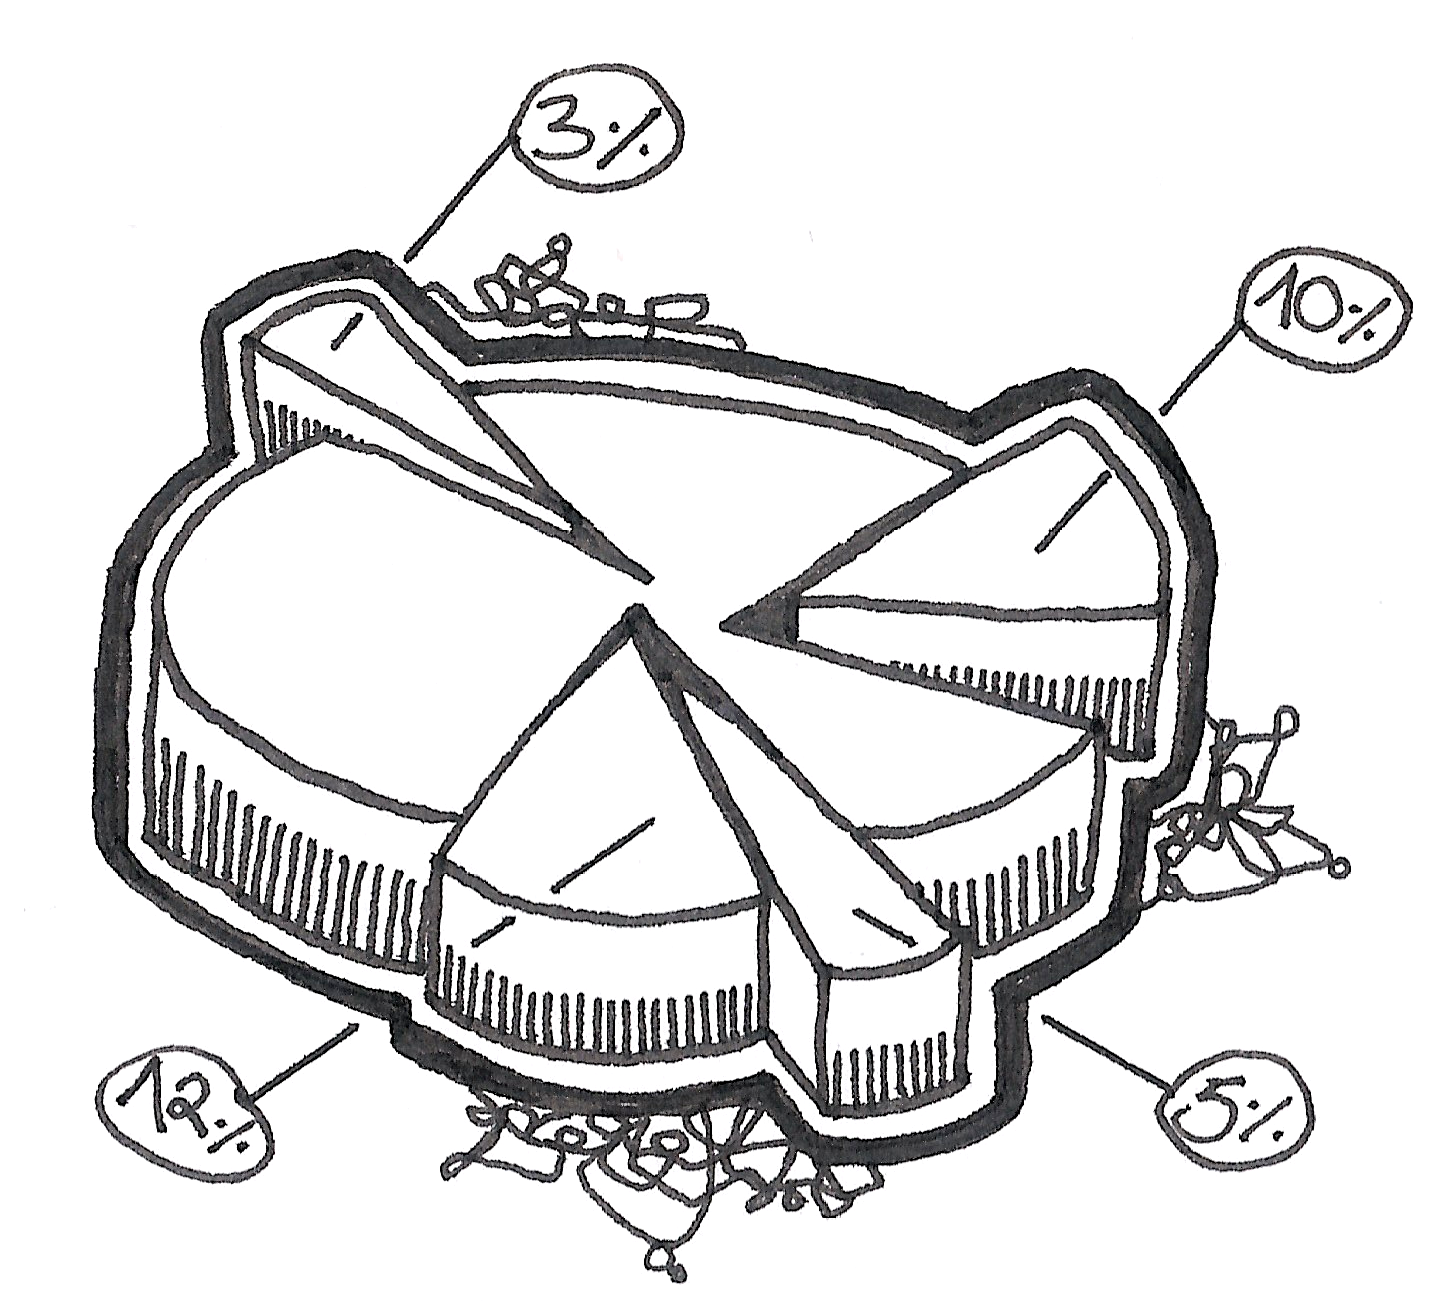 Zeichnung einer Torte, die wie ein Tortendiagramm angeschnitten wurde